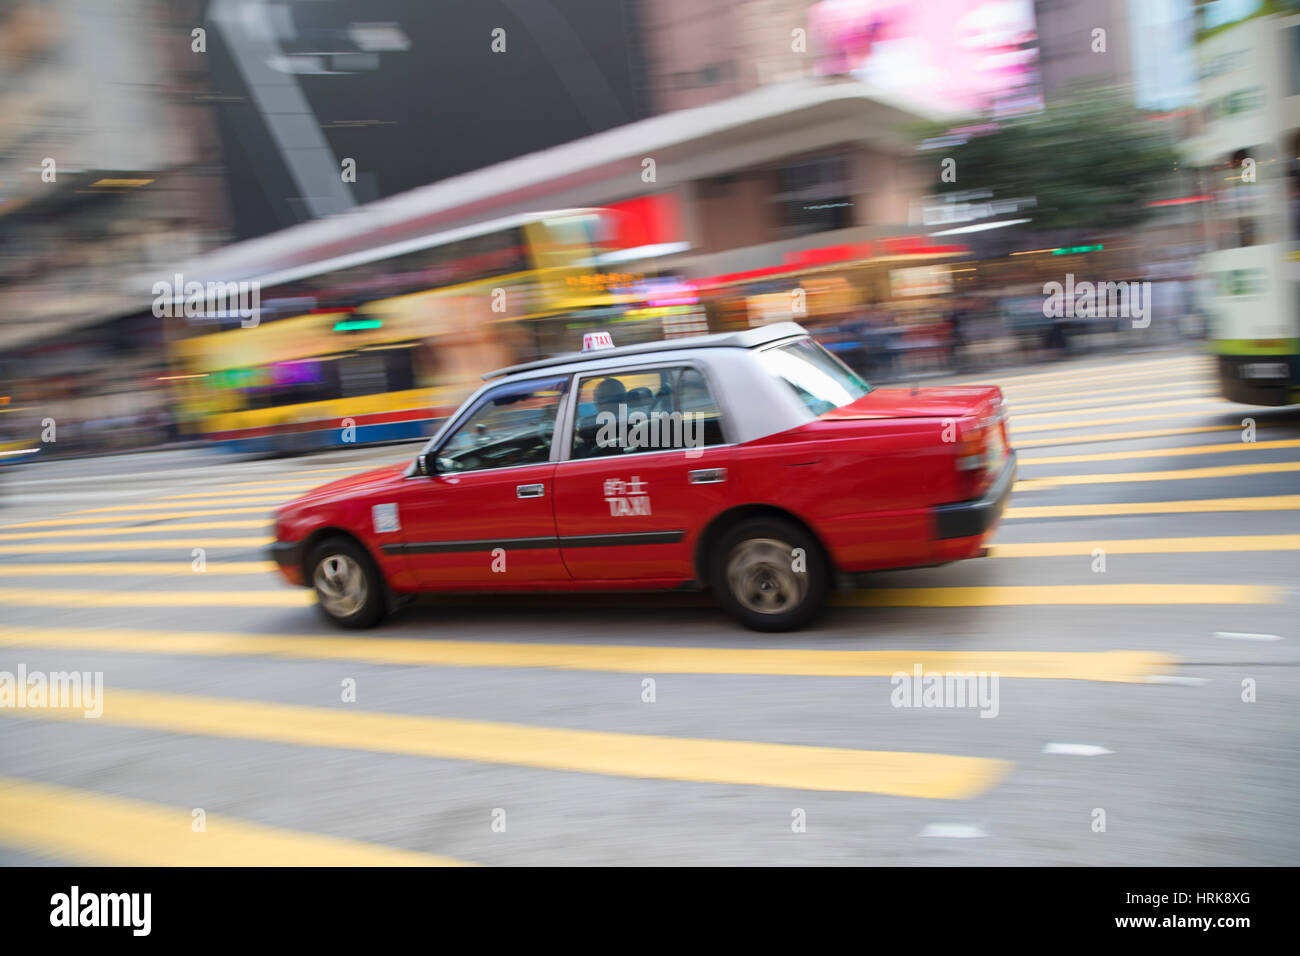 Taxi passing along street, Causeway Bay, Hong Kong Island, Hong Kong, China Stock Photo